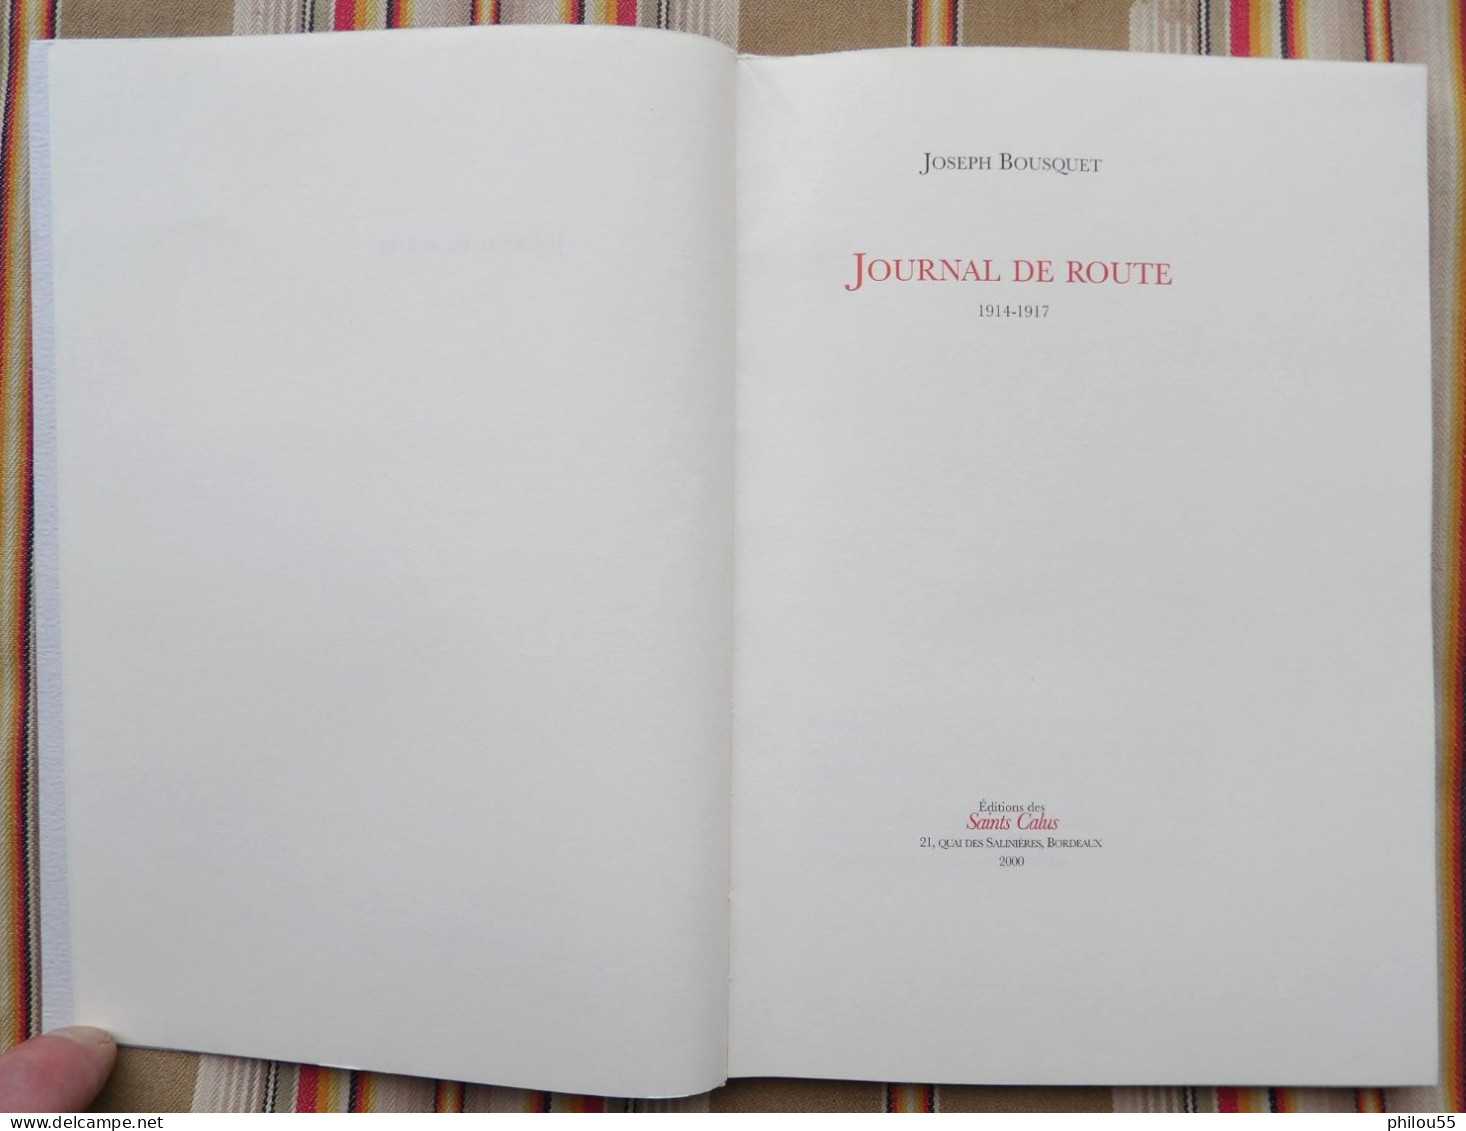 JOSEPH BOUSQUET JOURNAL DE ROUTE 1914 1917 Malecot Dubois Edition des Saints Calus 2000